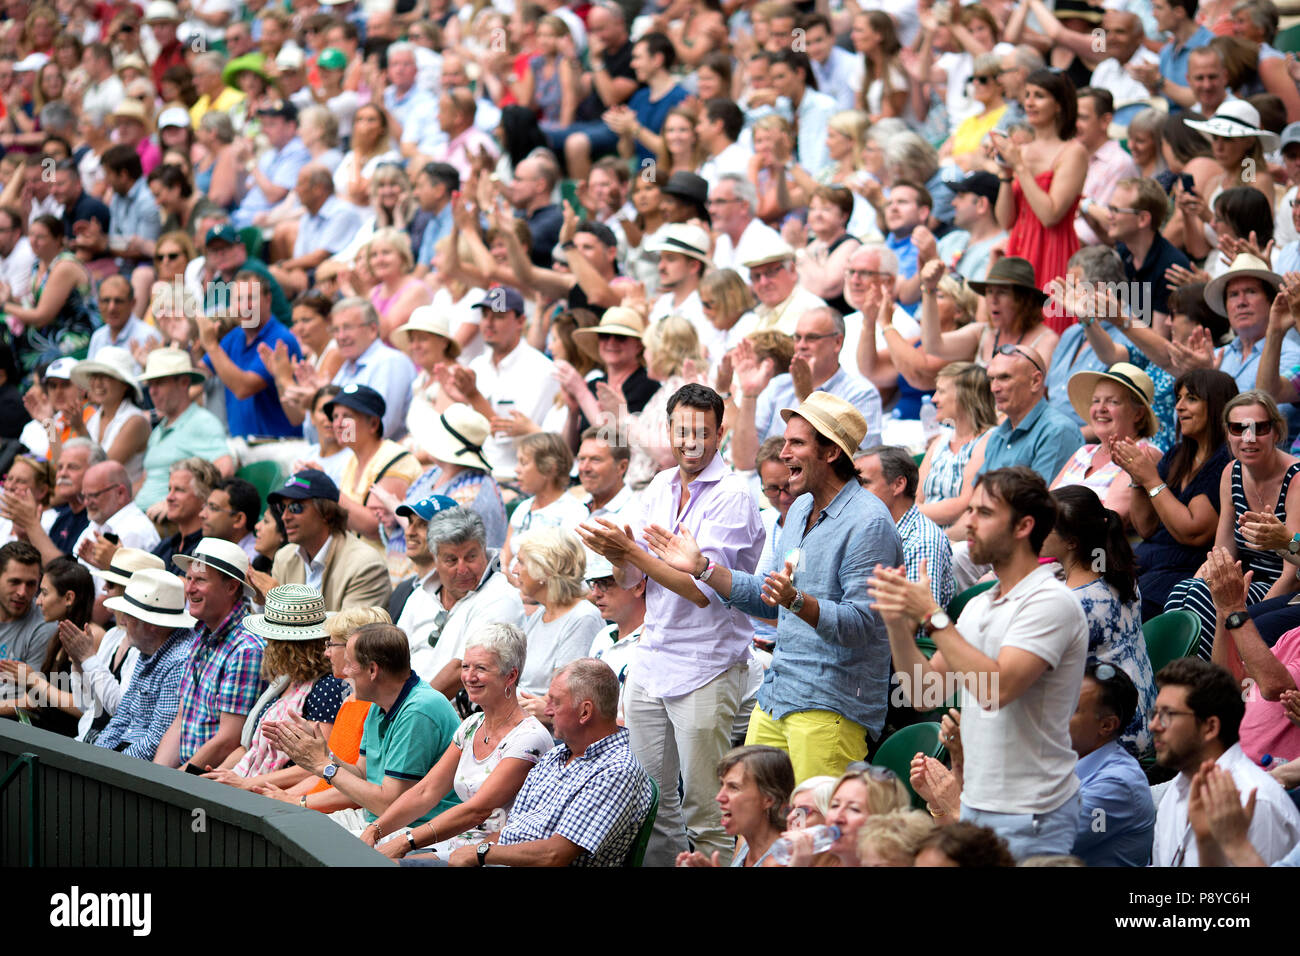 Los aficionados celebran después de que Kevin Anderson alcance su primera final de Wimbledon, venciendo a John Isner, de noveno año, estadounidense 7-6 (8/6) 6-7 (5/7) 6-7 9 en la semifinal más larga de la historia del torneo, el día once del Campeonato de Wimbledon en el All England Lawn Tennis and Croquet Club, Wimbledon. 11 6-4 26-24 Foto de stock